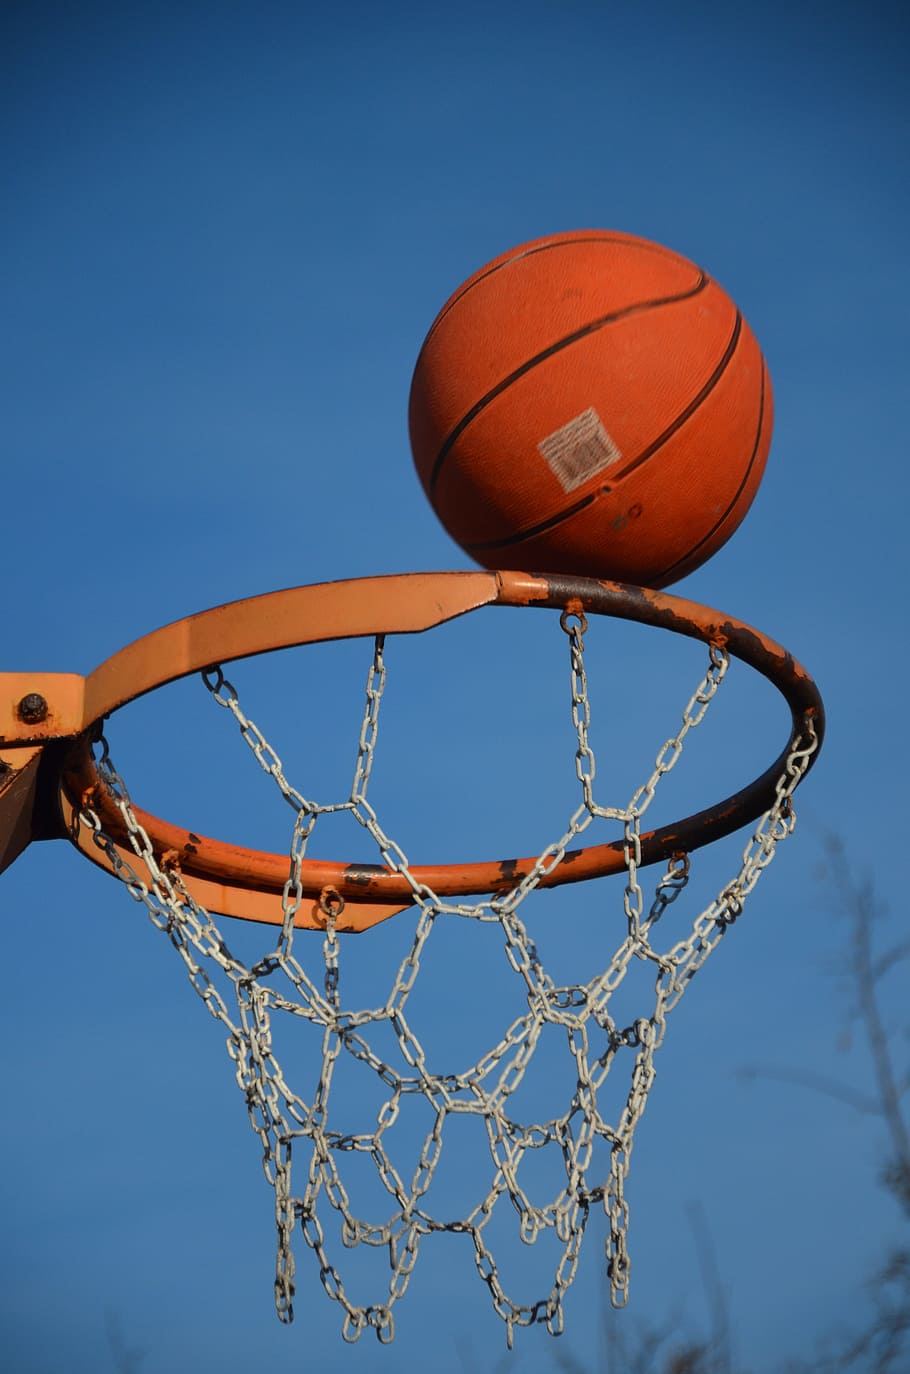 Basket, Bola, Olahraga, Permainan, kompetisi, bermain, peralatan, keranjang, waktu luang, aktivitas